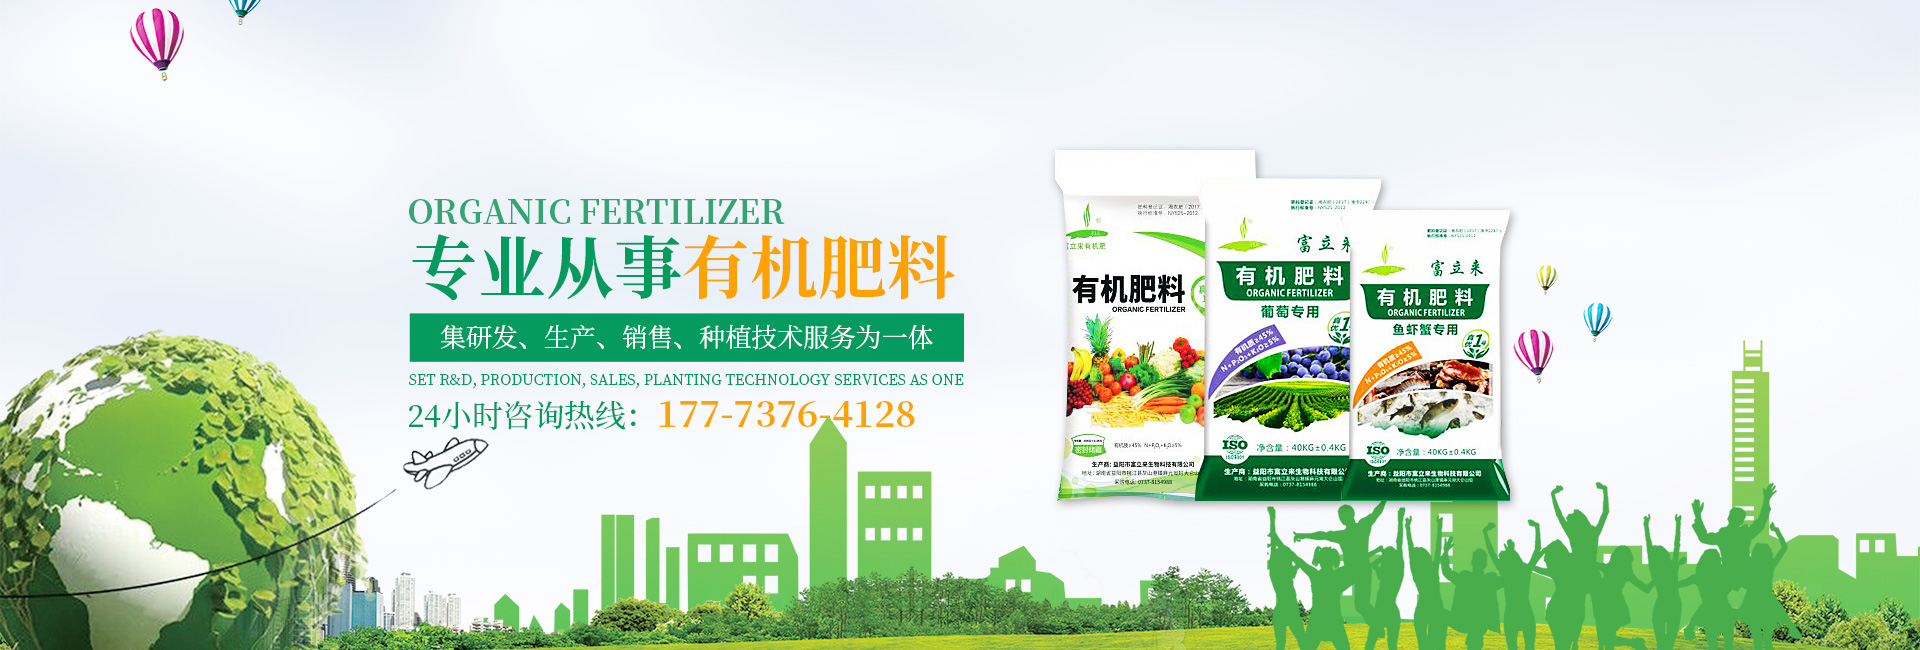 益阳市富立来生物科技有限公司_益阳大型综合性肥料生产企业